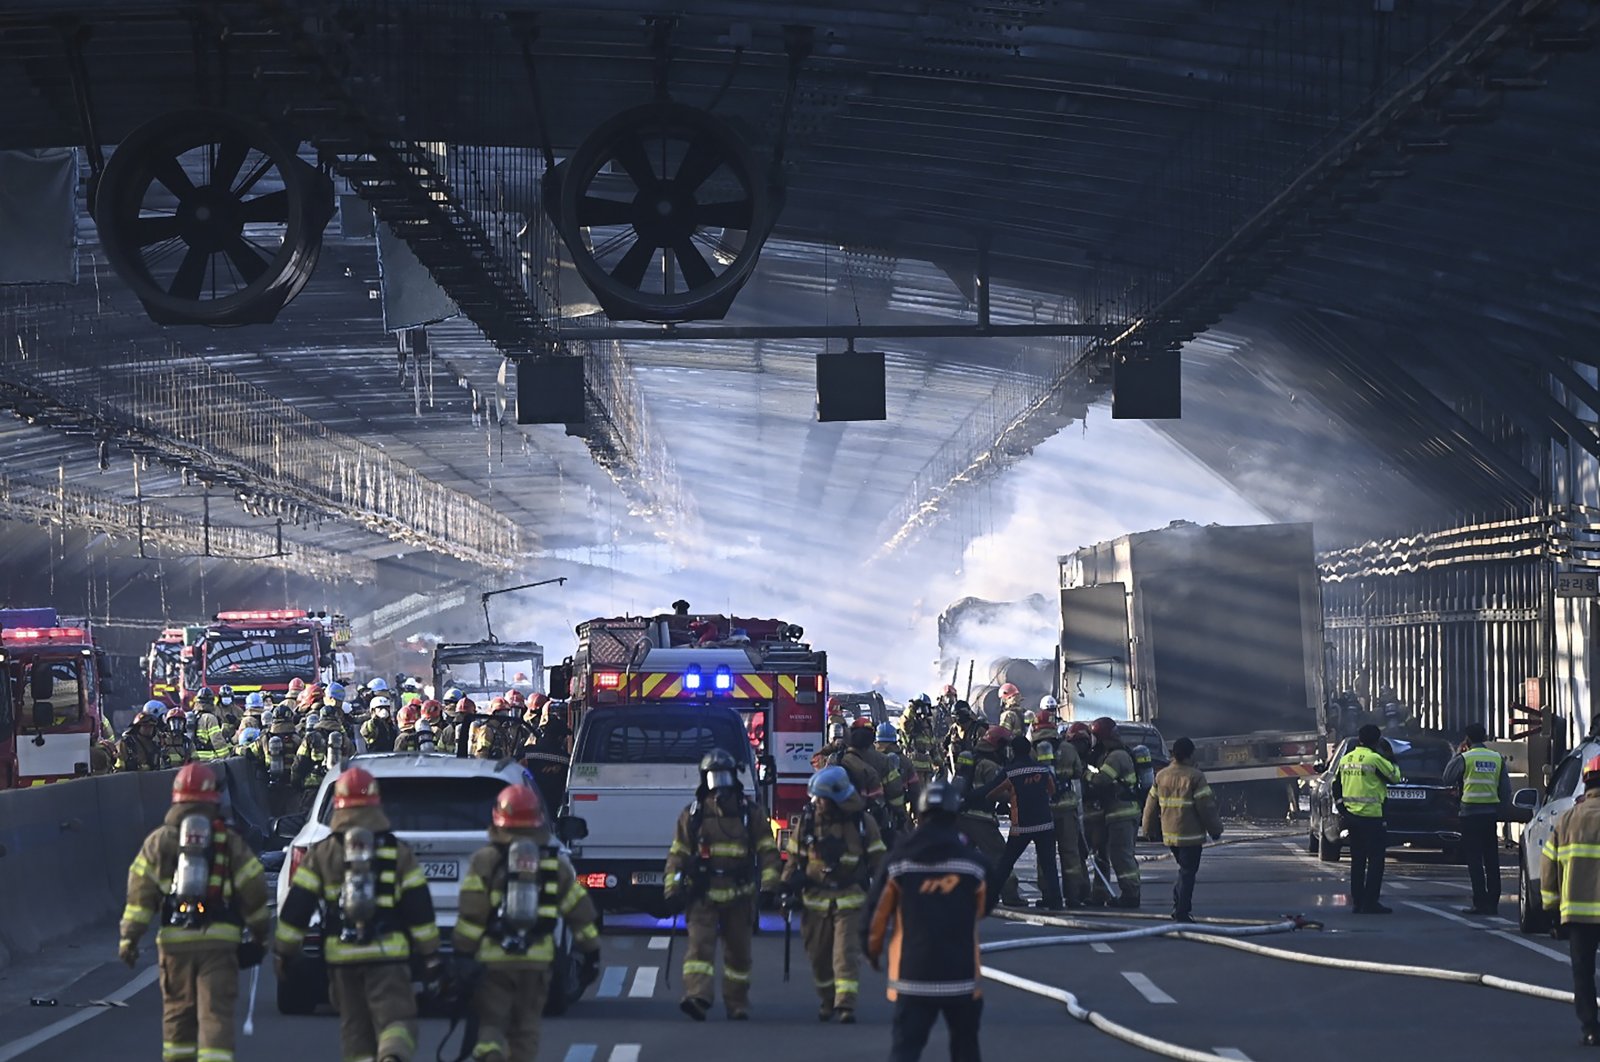 Kebakaran terowongan jalan Korea Selatan tewaskan 5 orang, puluhan luka-luka